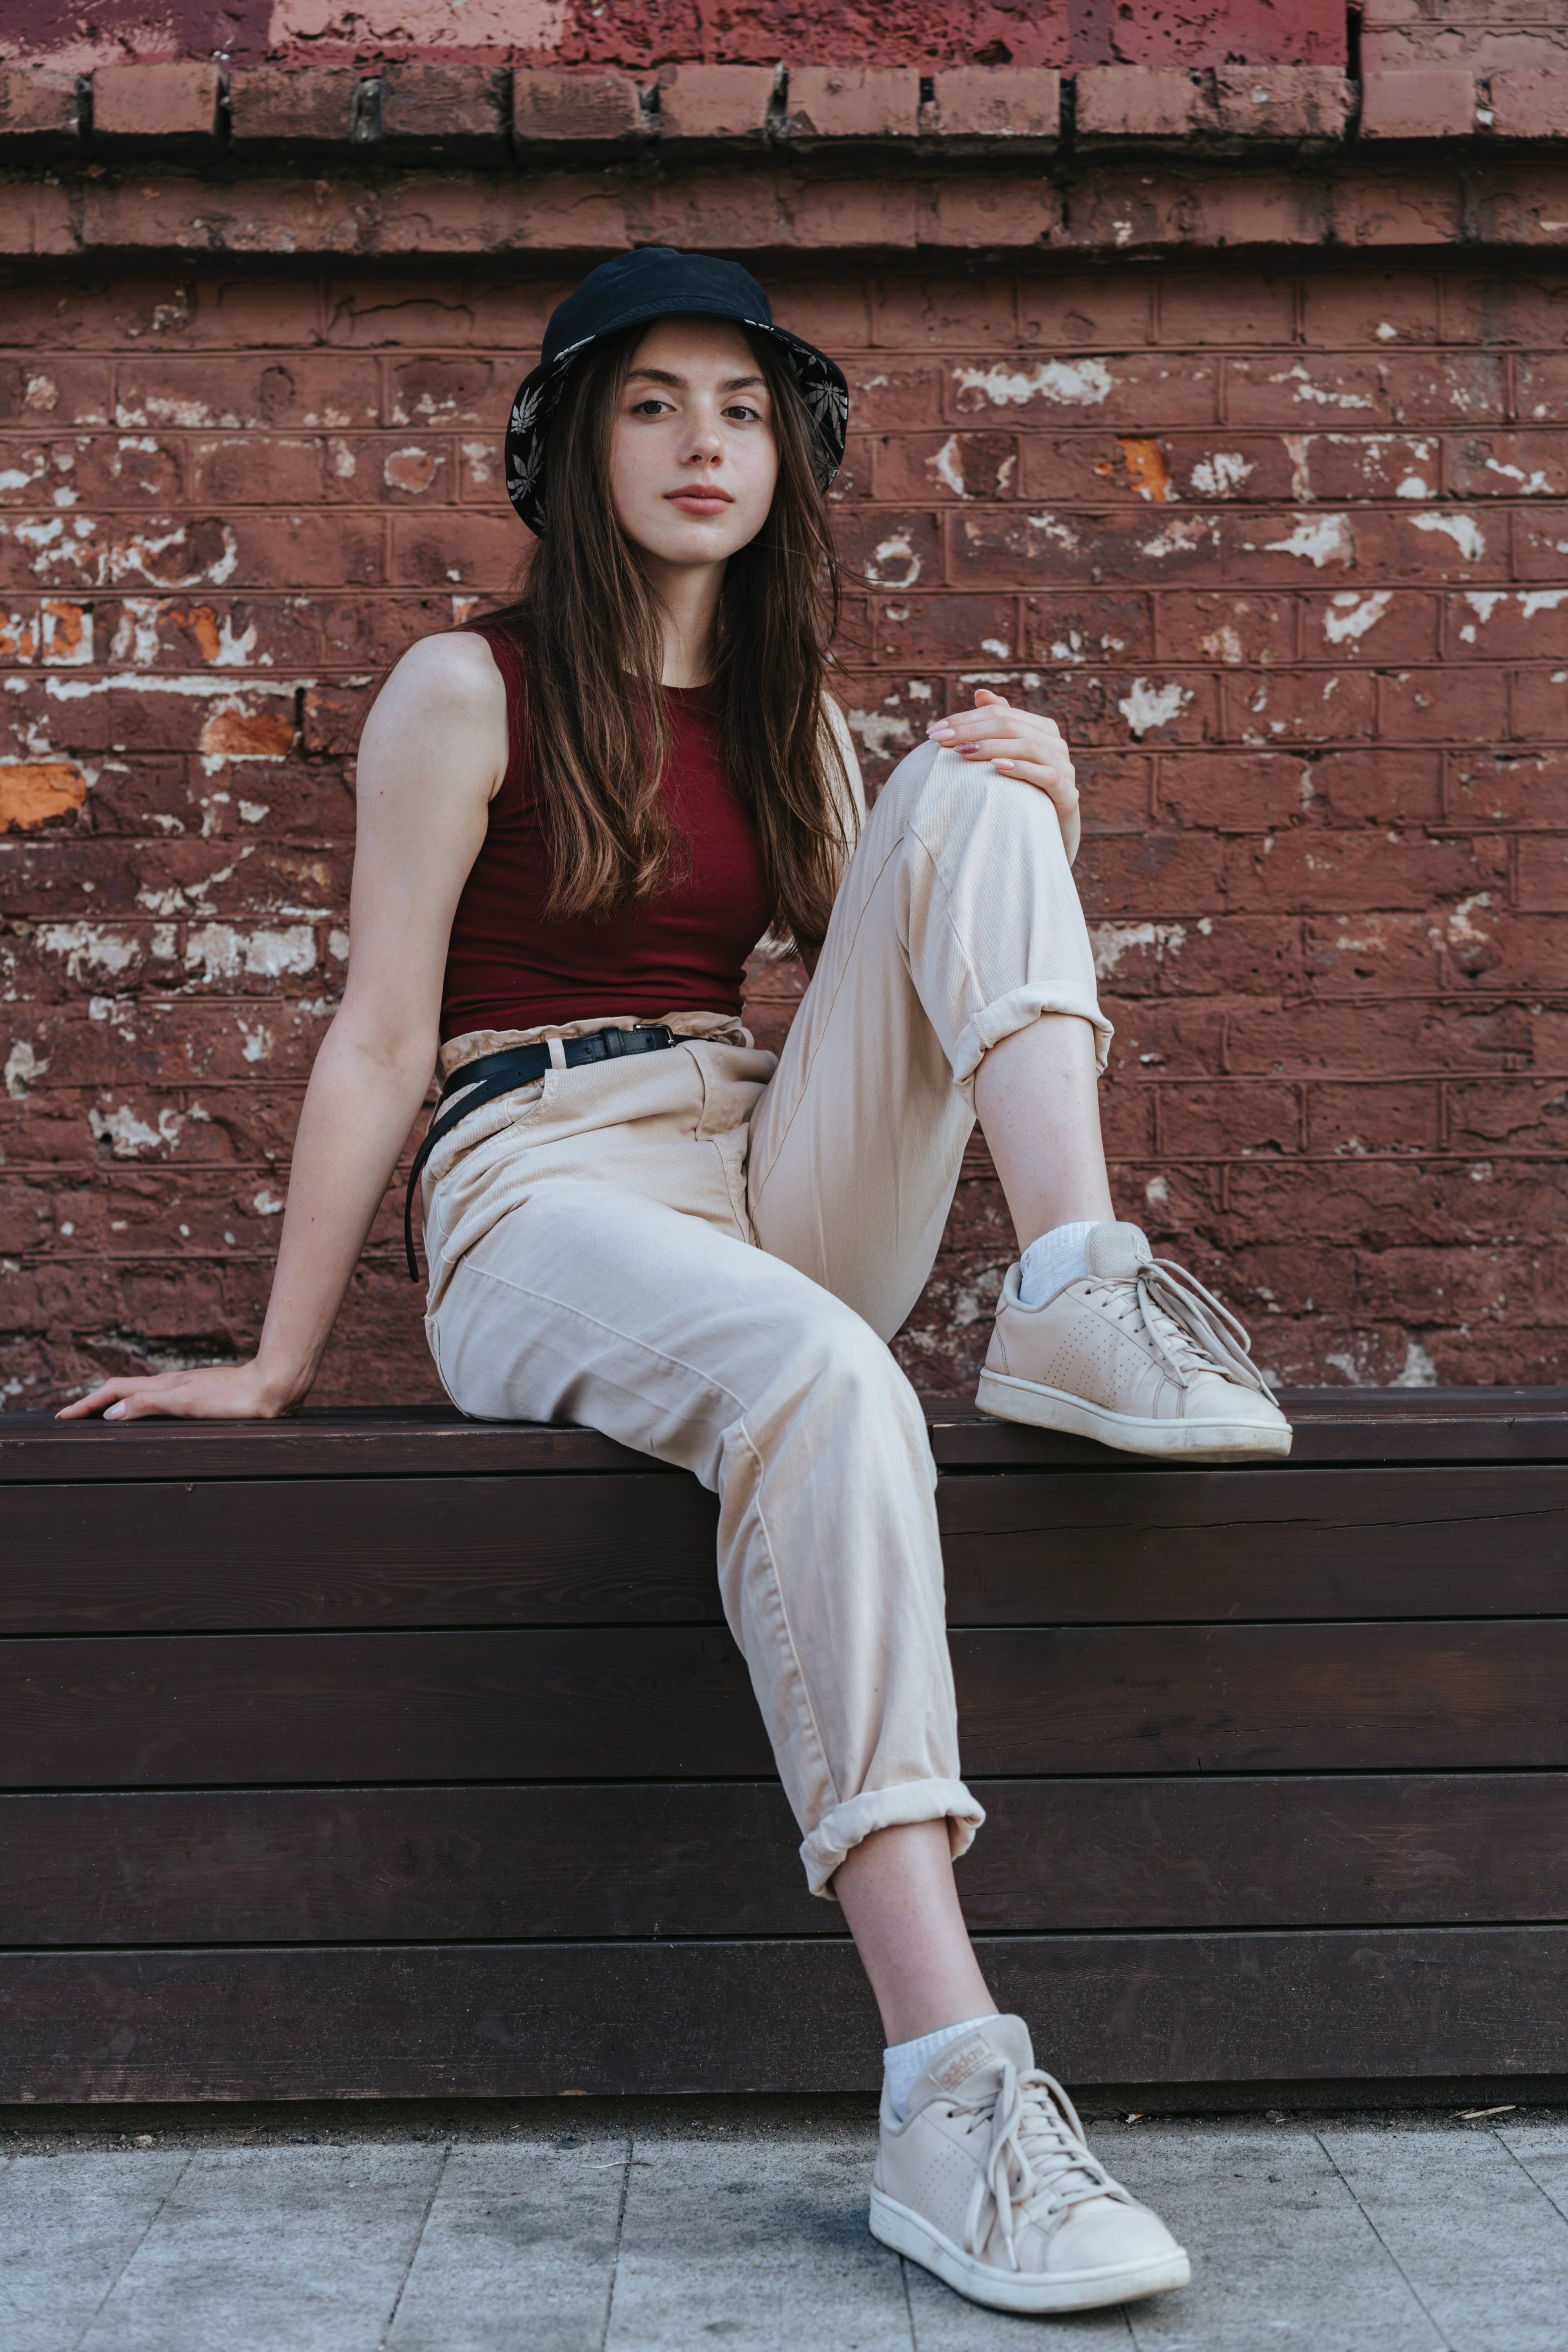 Ein junges Mädchen sitzt auf einer Mauer | Quelle: Pexels